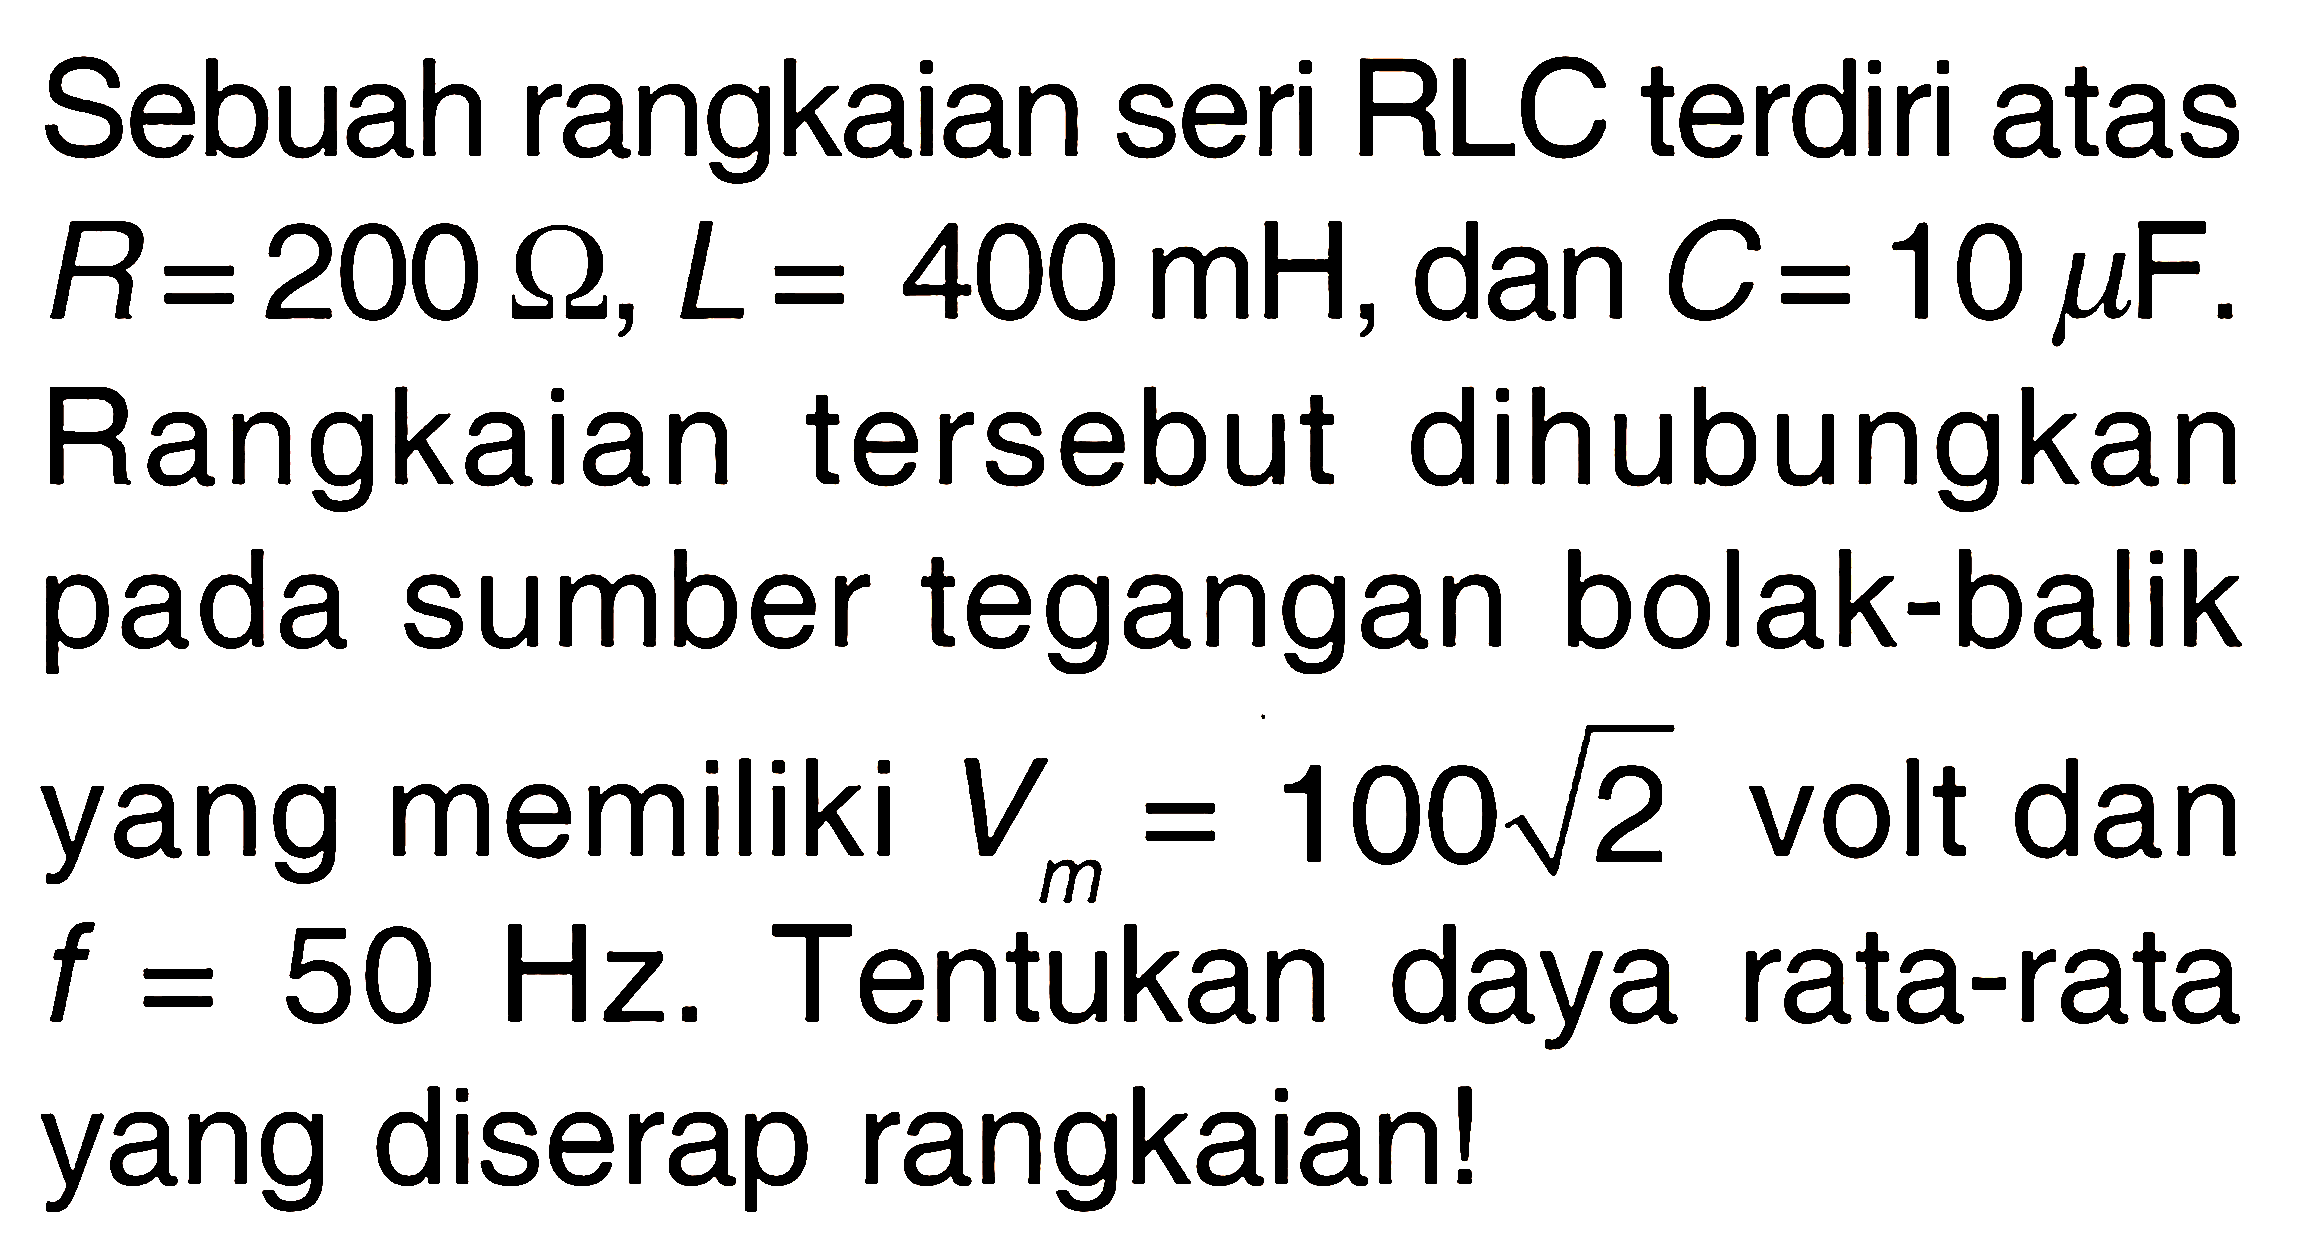 Sebuah rangkaian seri RLC terdiri atas  R=200 omega, L=400 mH, dan  C=10 mu F. Rangkaian tersebut dihubungkan pada sumber tegangan bolak-balik yang memiliki  Vm=100 akar(2) volt dan f=50 Hz. Tentukan daya rata-rata yang diserap rangkaian!